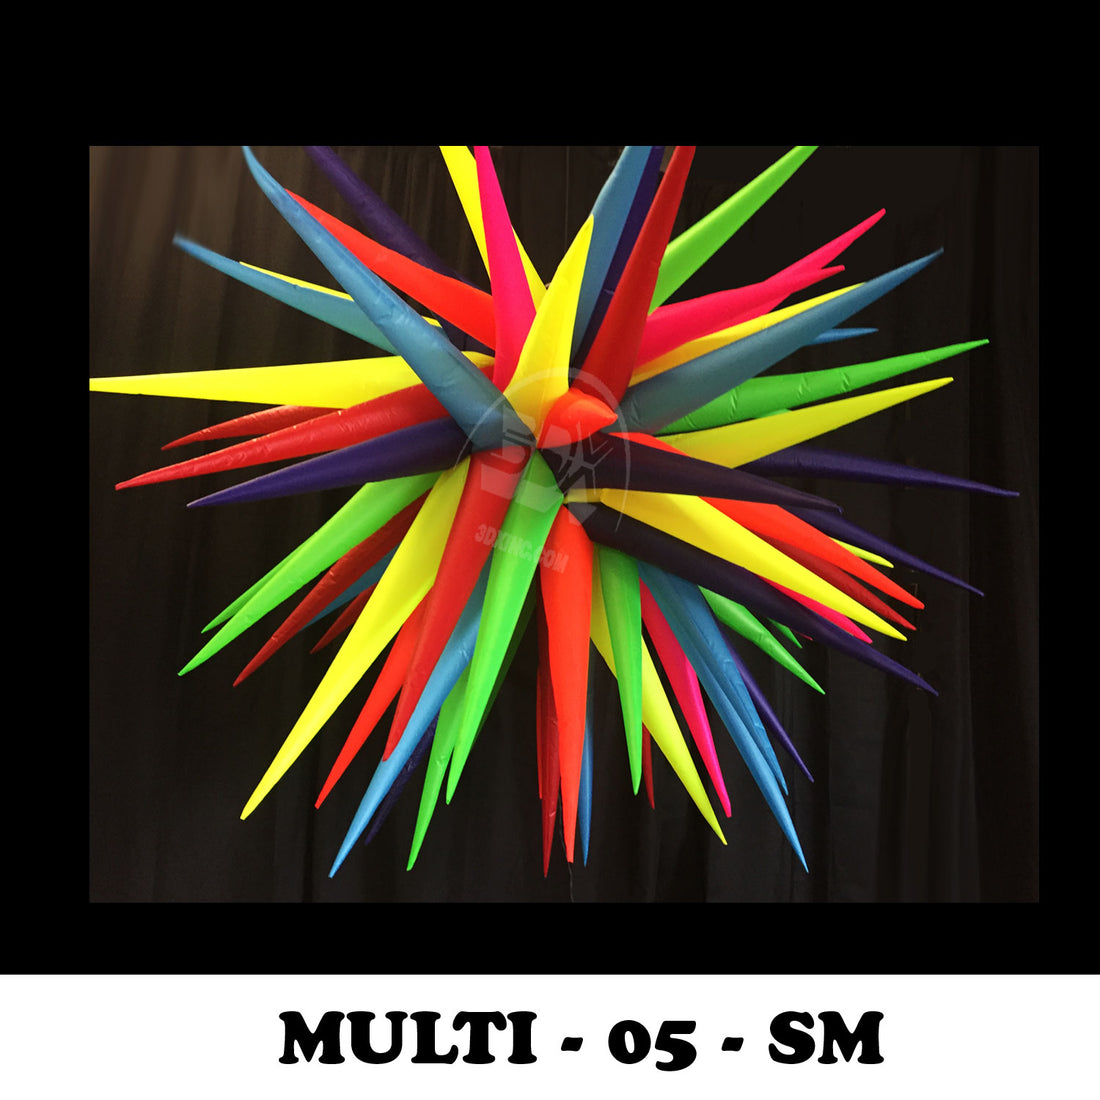 MULTI - 05 - SM